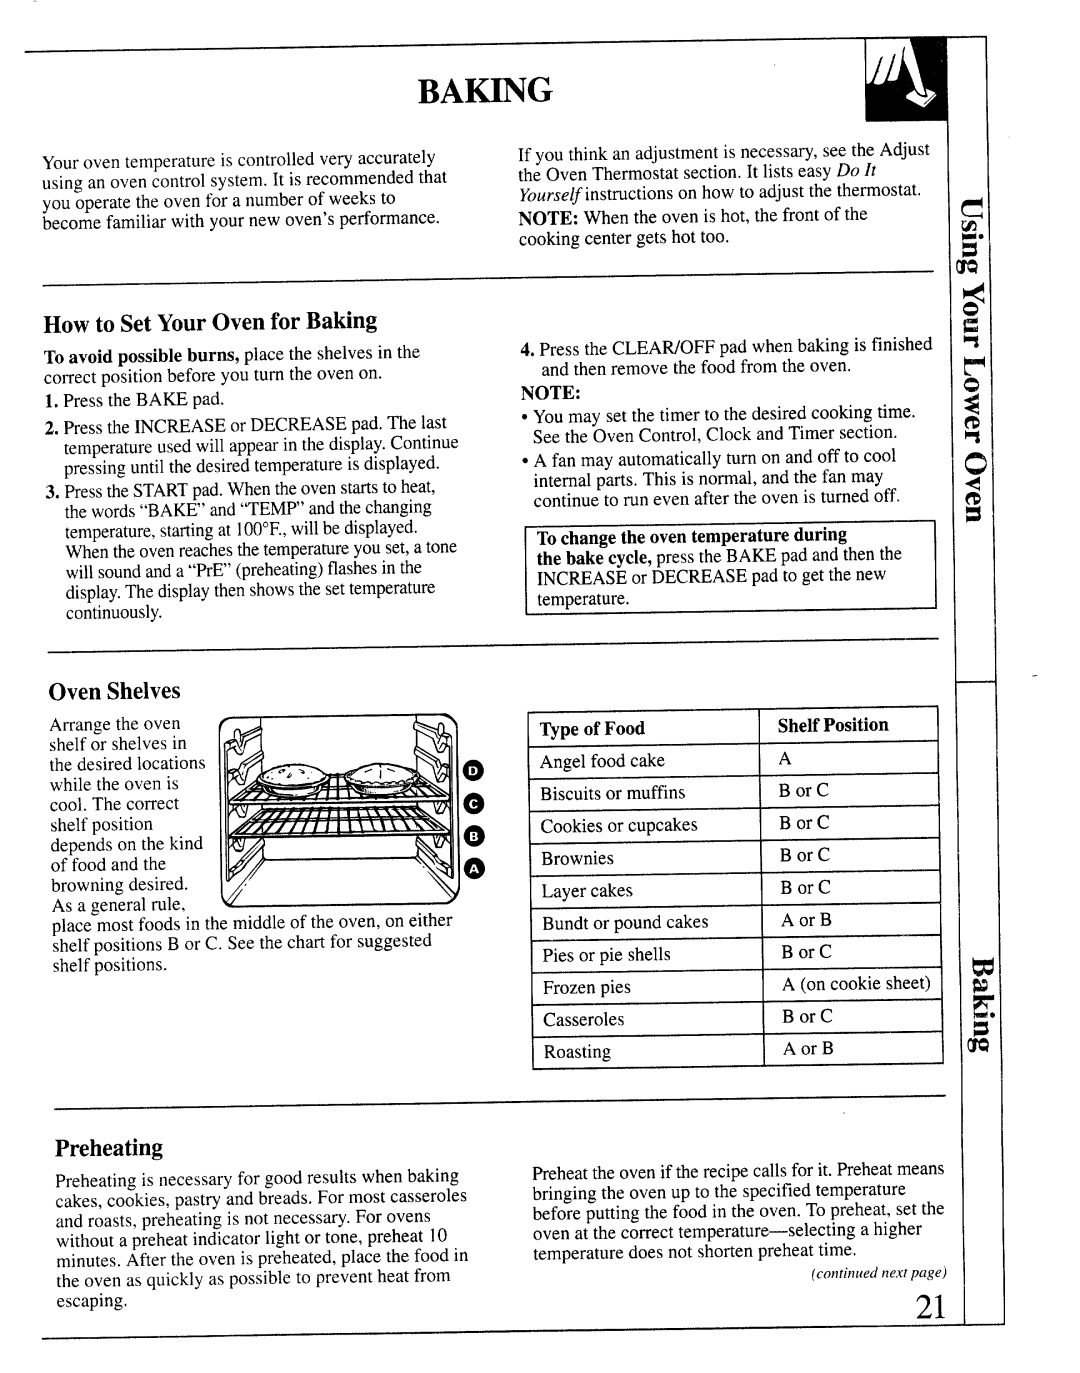 GE JKP64, JKP66, JKP65, 164D2966P127-I manual Ba~G, How to Set YourOven for Baking, Preheating, Oven Shelves 